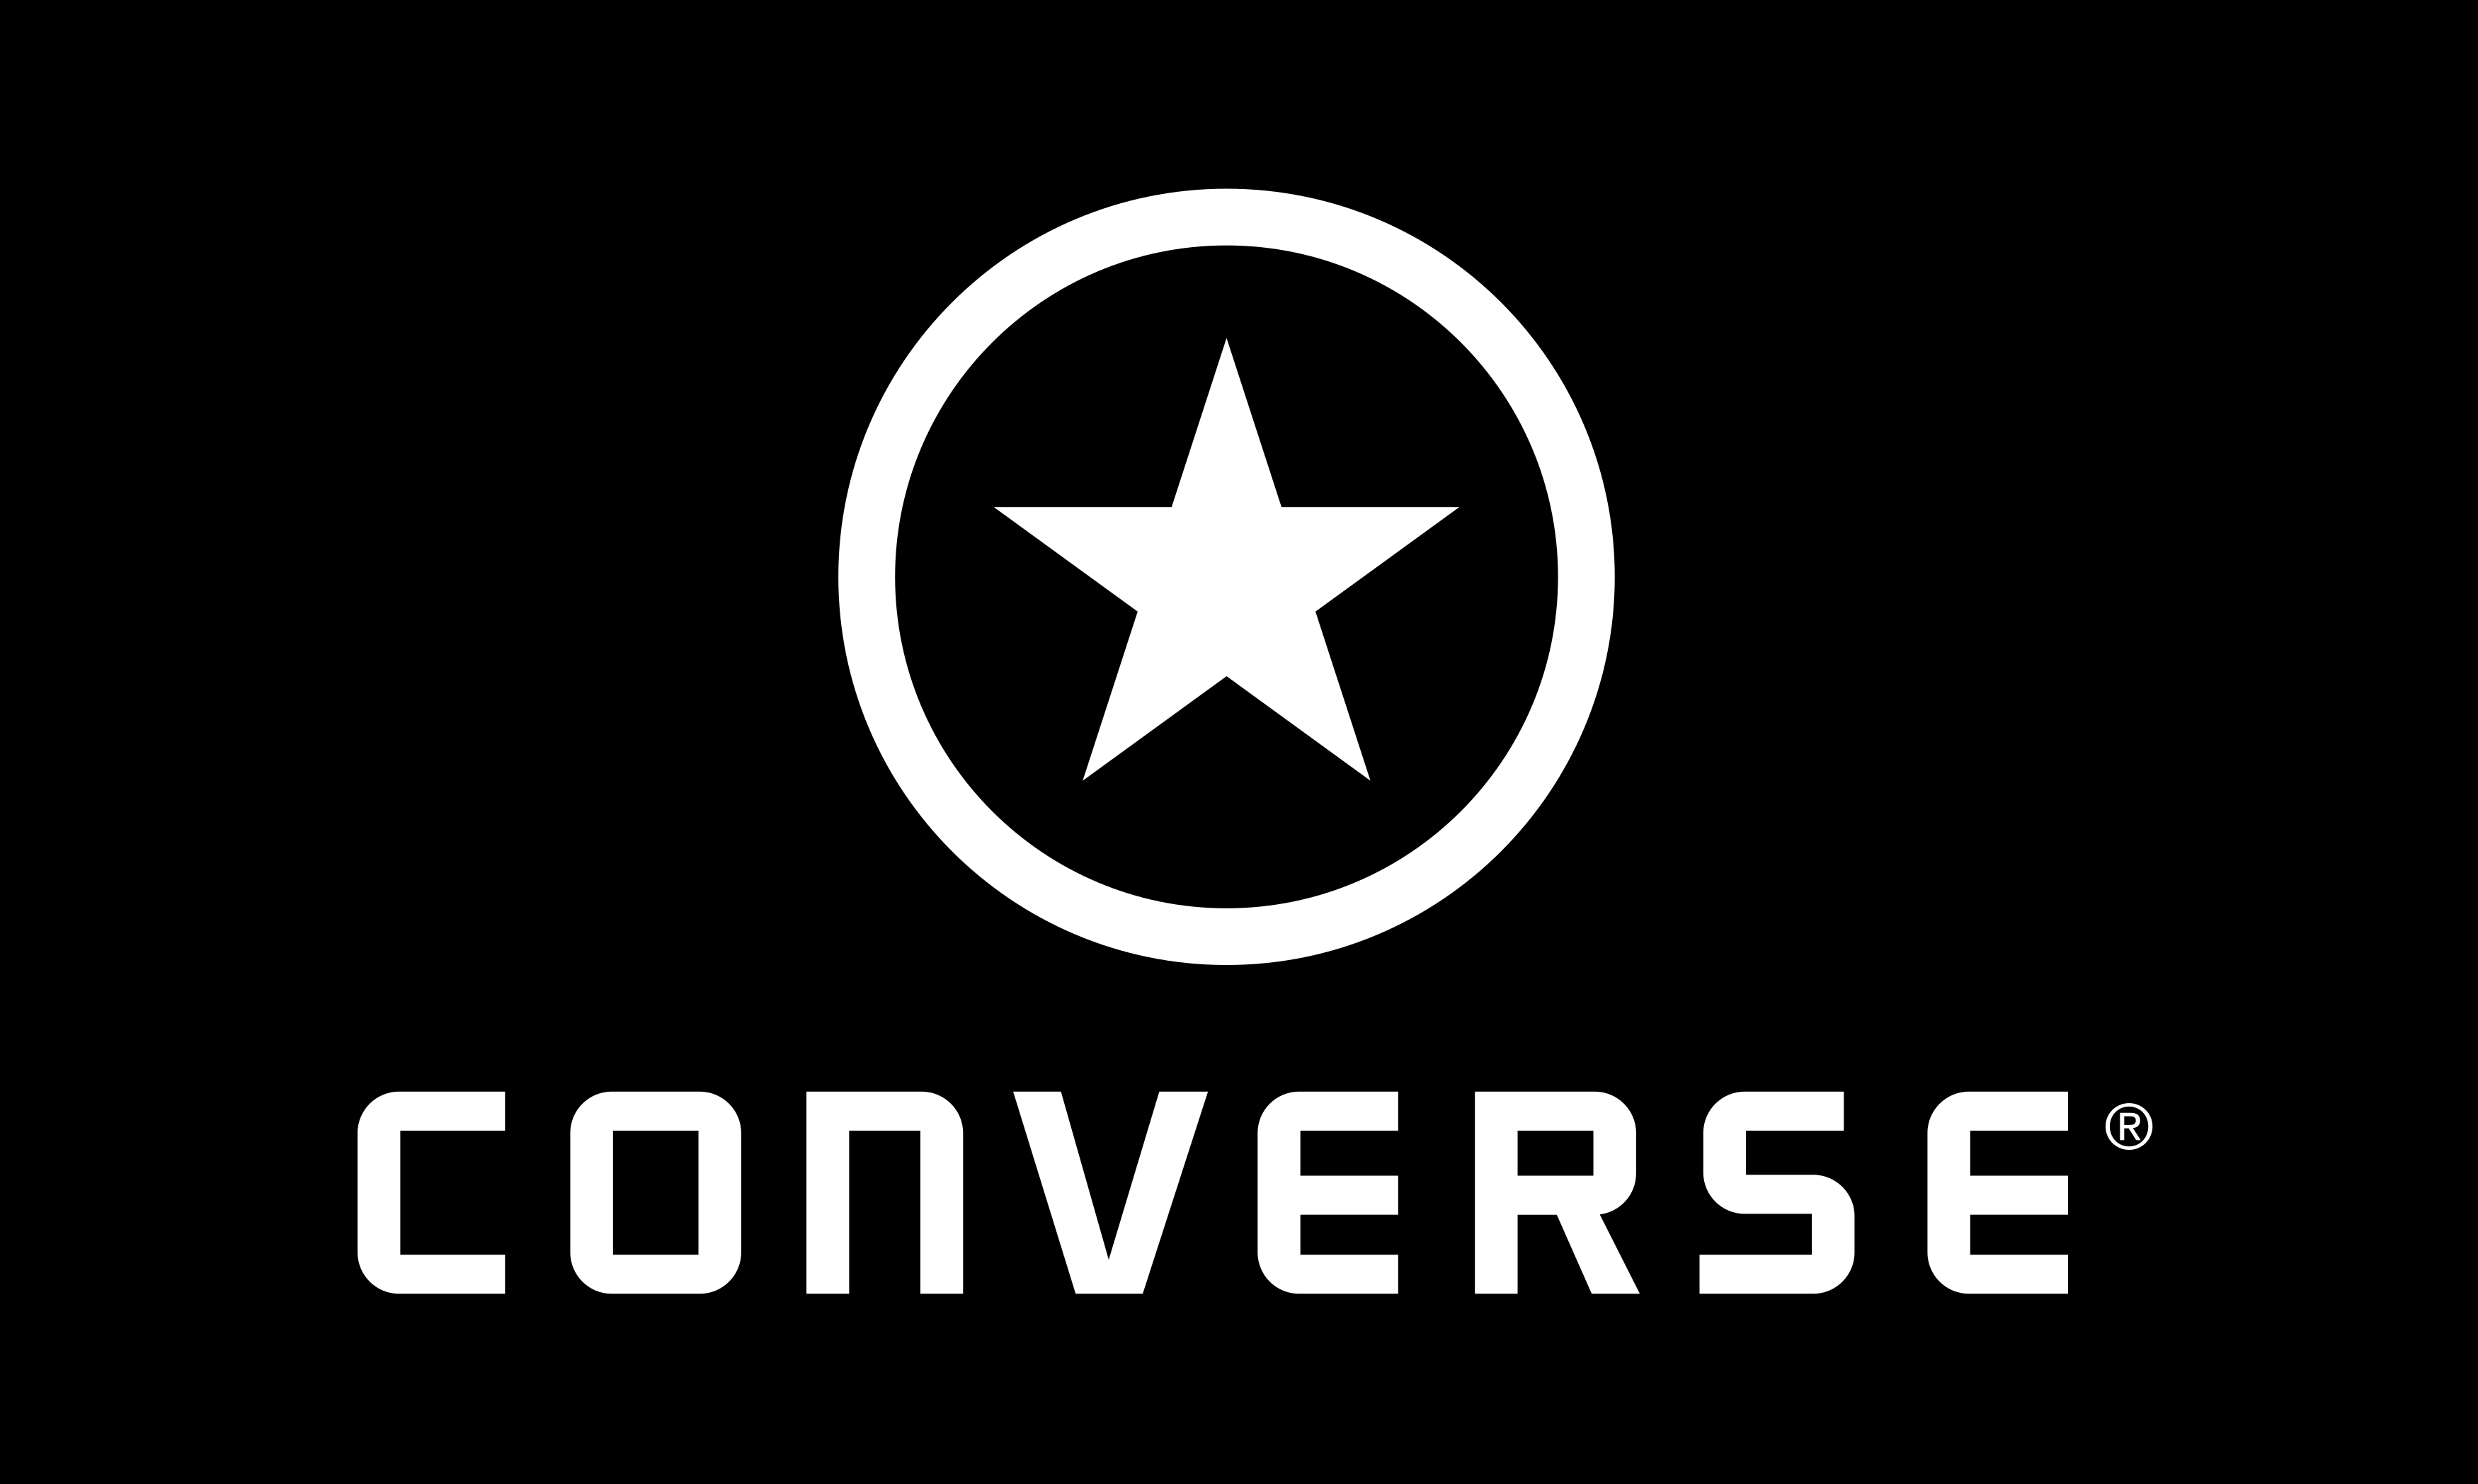 Converse Logo Design